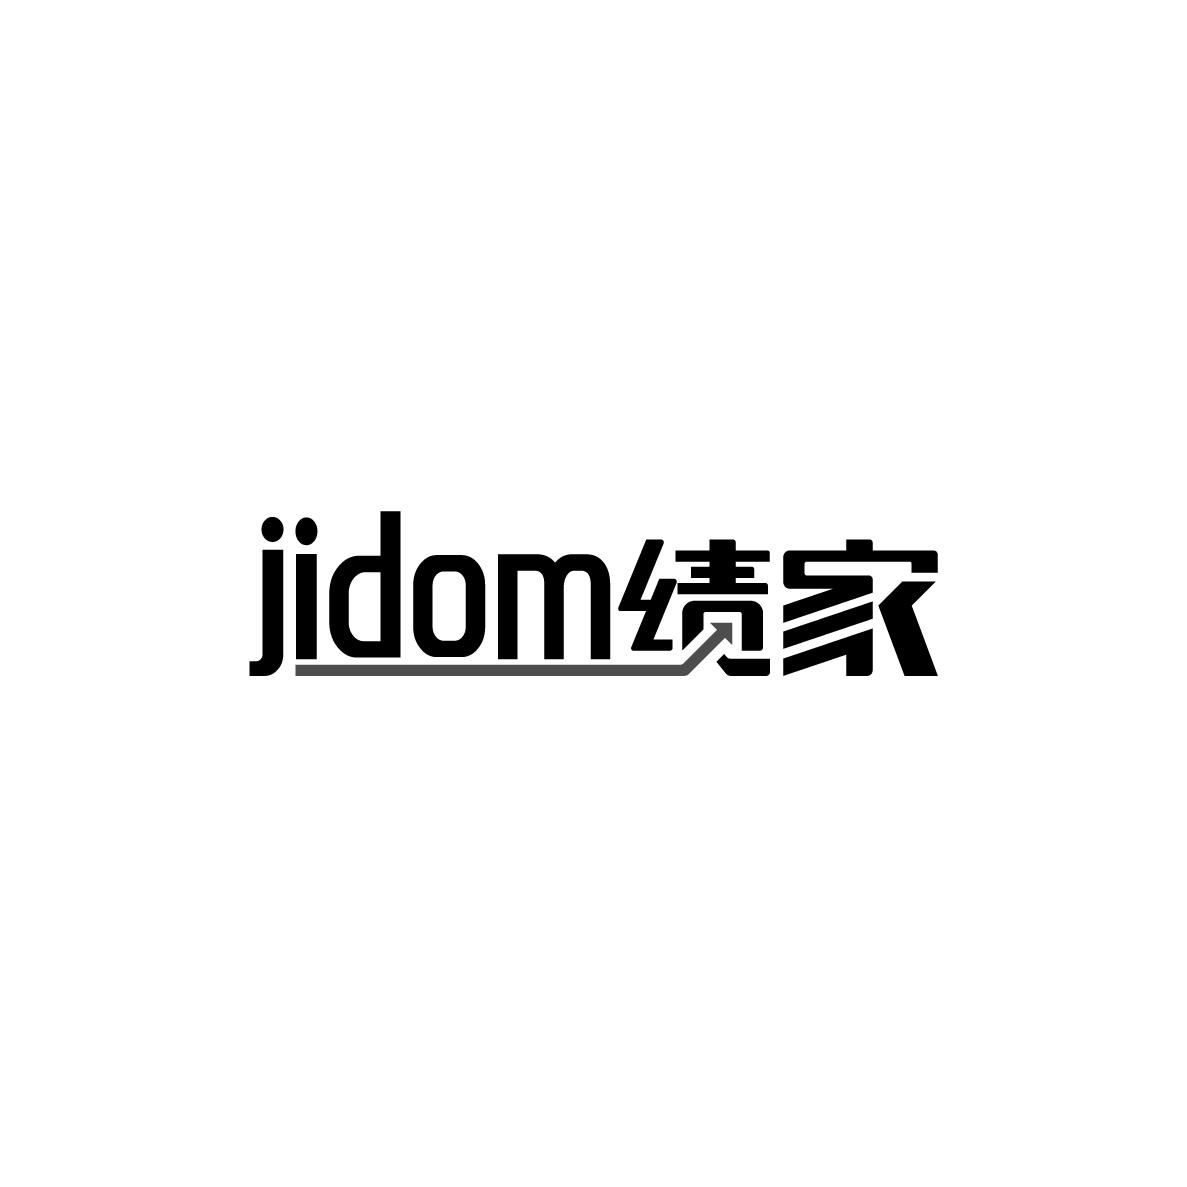 36类-金融保险JIDOM 绩家商标转让